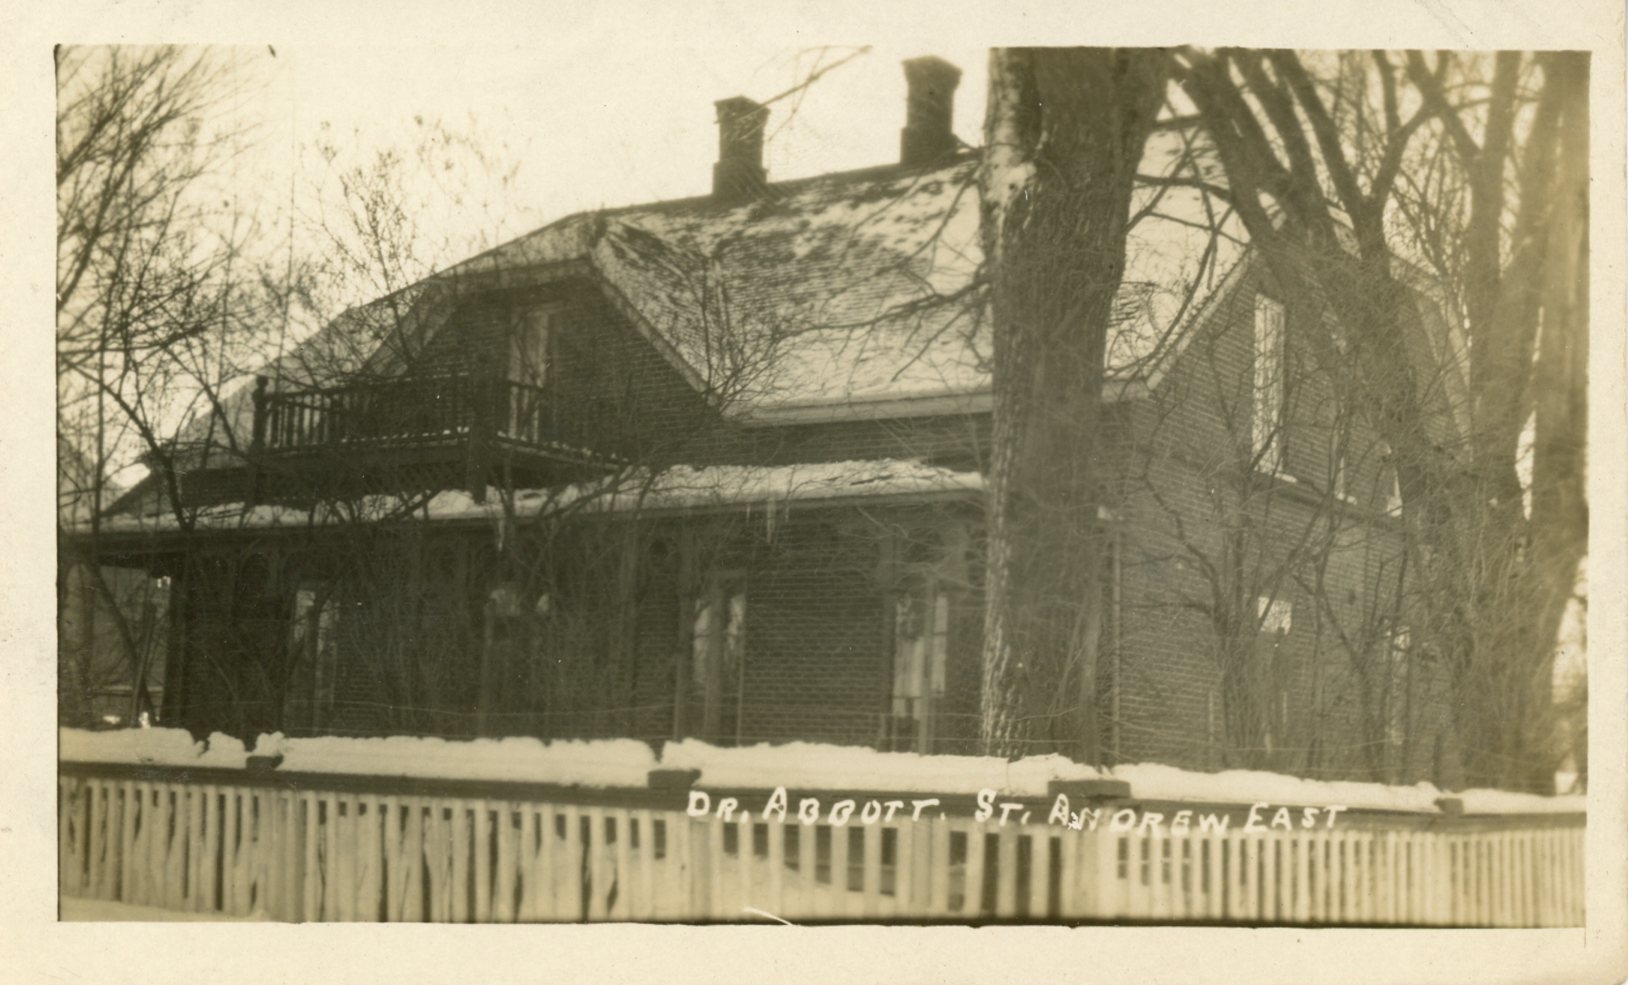 Photographie d’Elmbank, la résidence de Maude Abbott, en hiver, sépia. Il s’agit d’une maison en briques de deux étages avec un toit à deux versants, deux cheminées et une galerie à chaque étage. On aperçoit une clôture en bois blanche à l’avant de la maison, qui est entourée d’arbres sans feuille. 